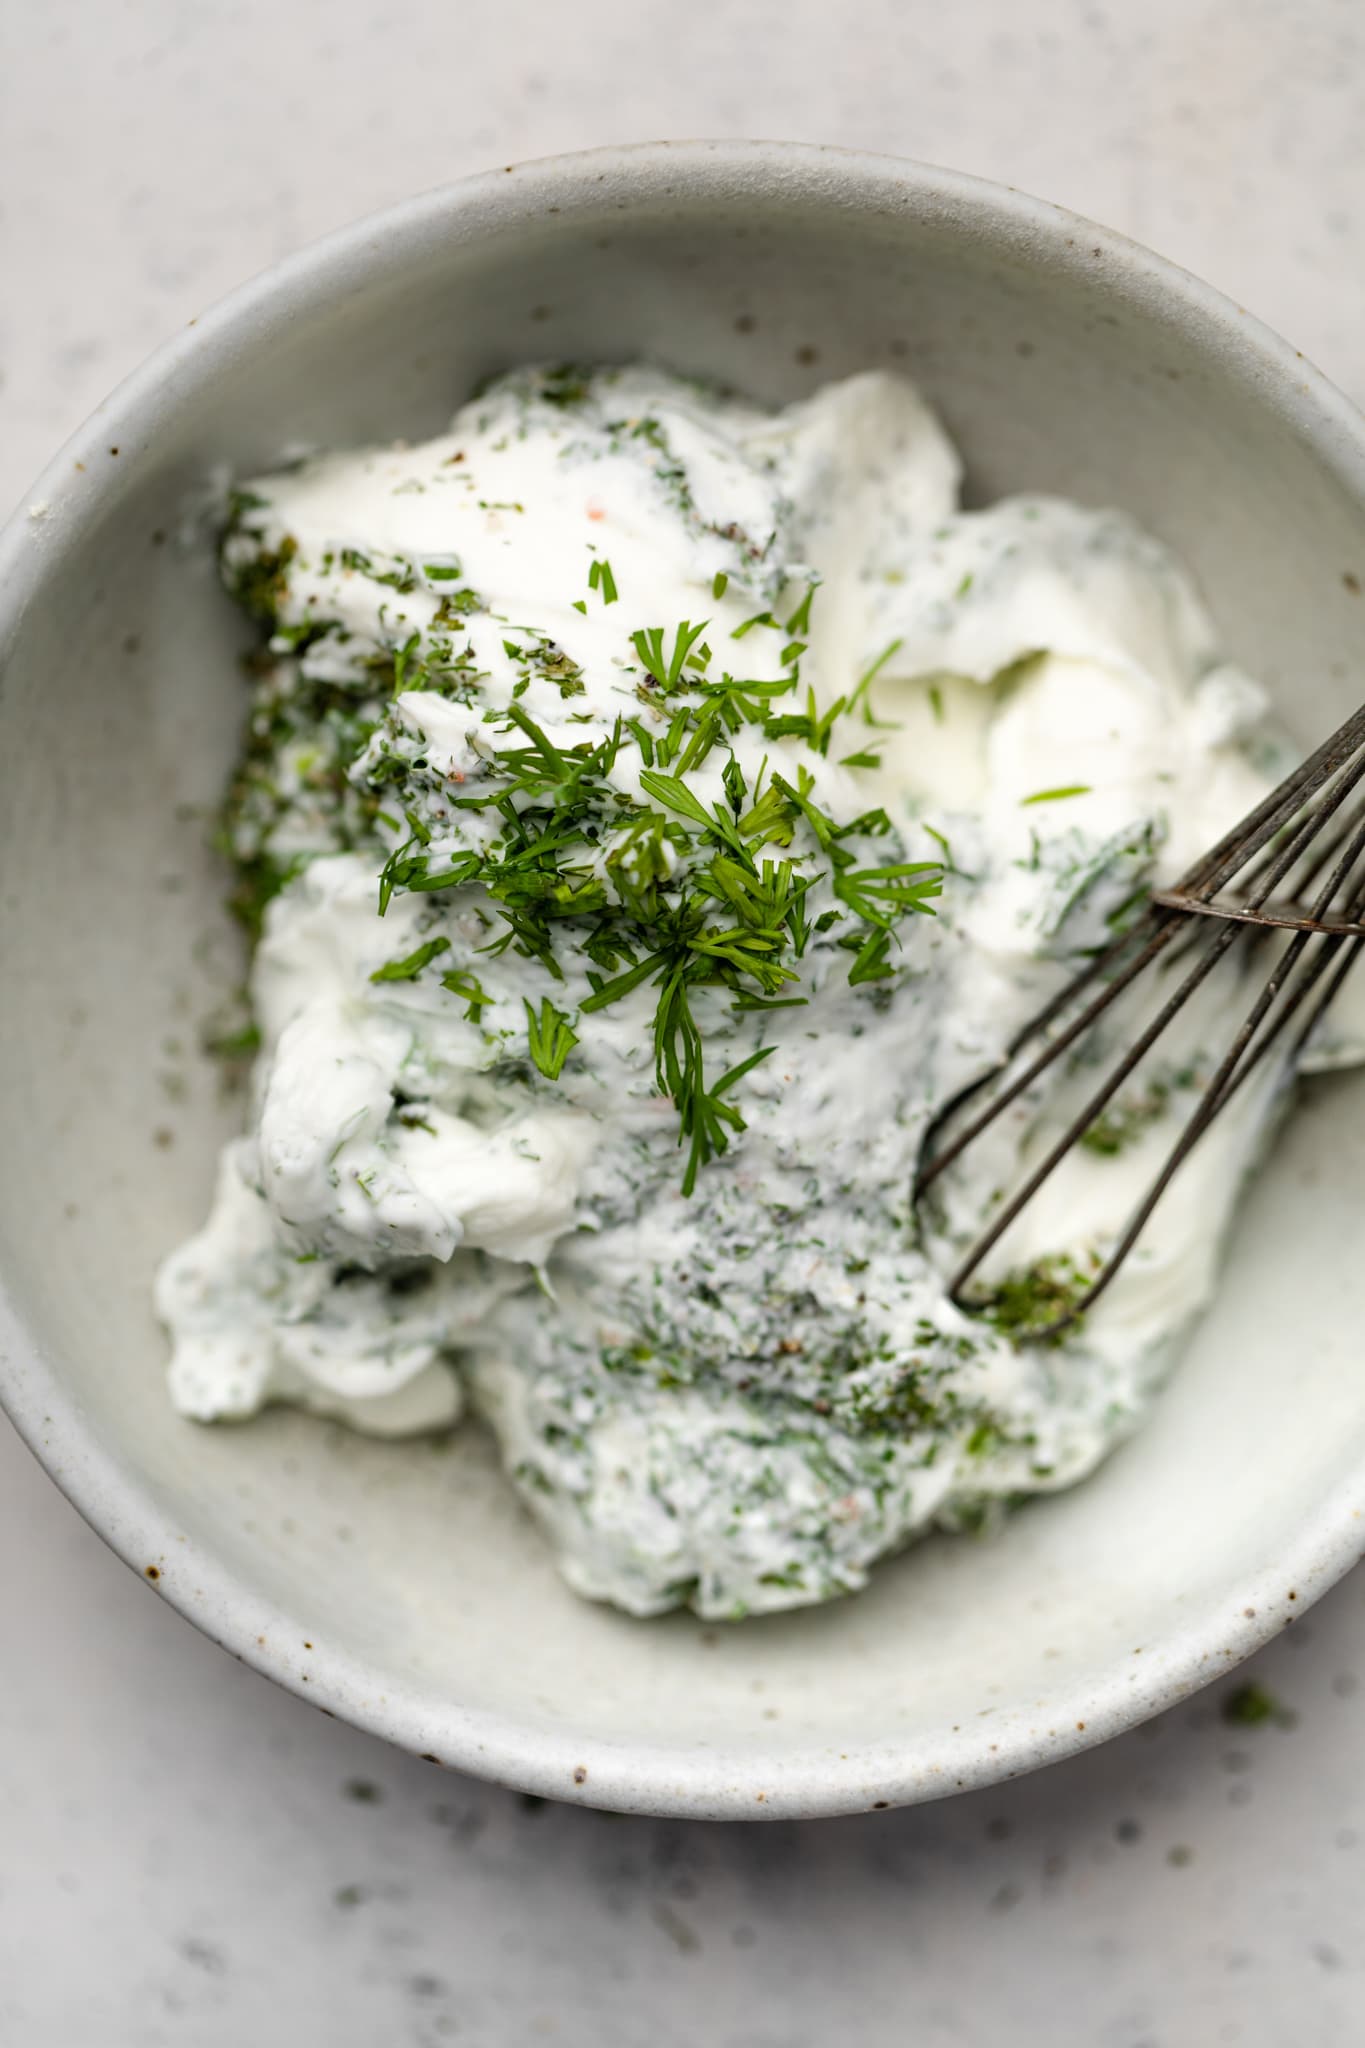 Greek Yogurt dip with herbs on top